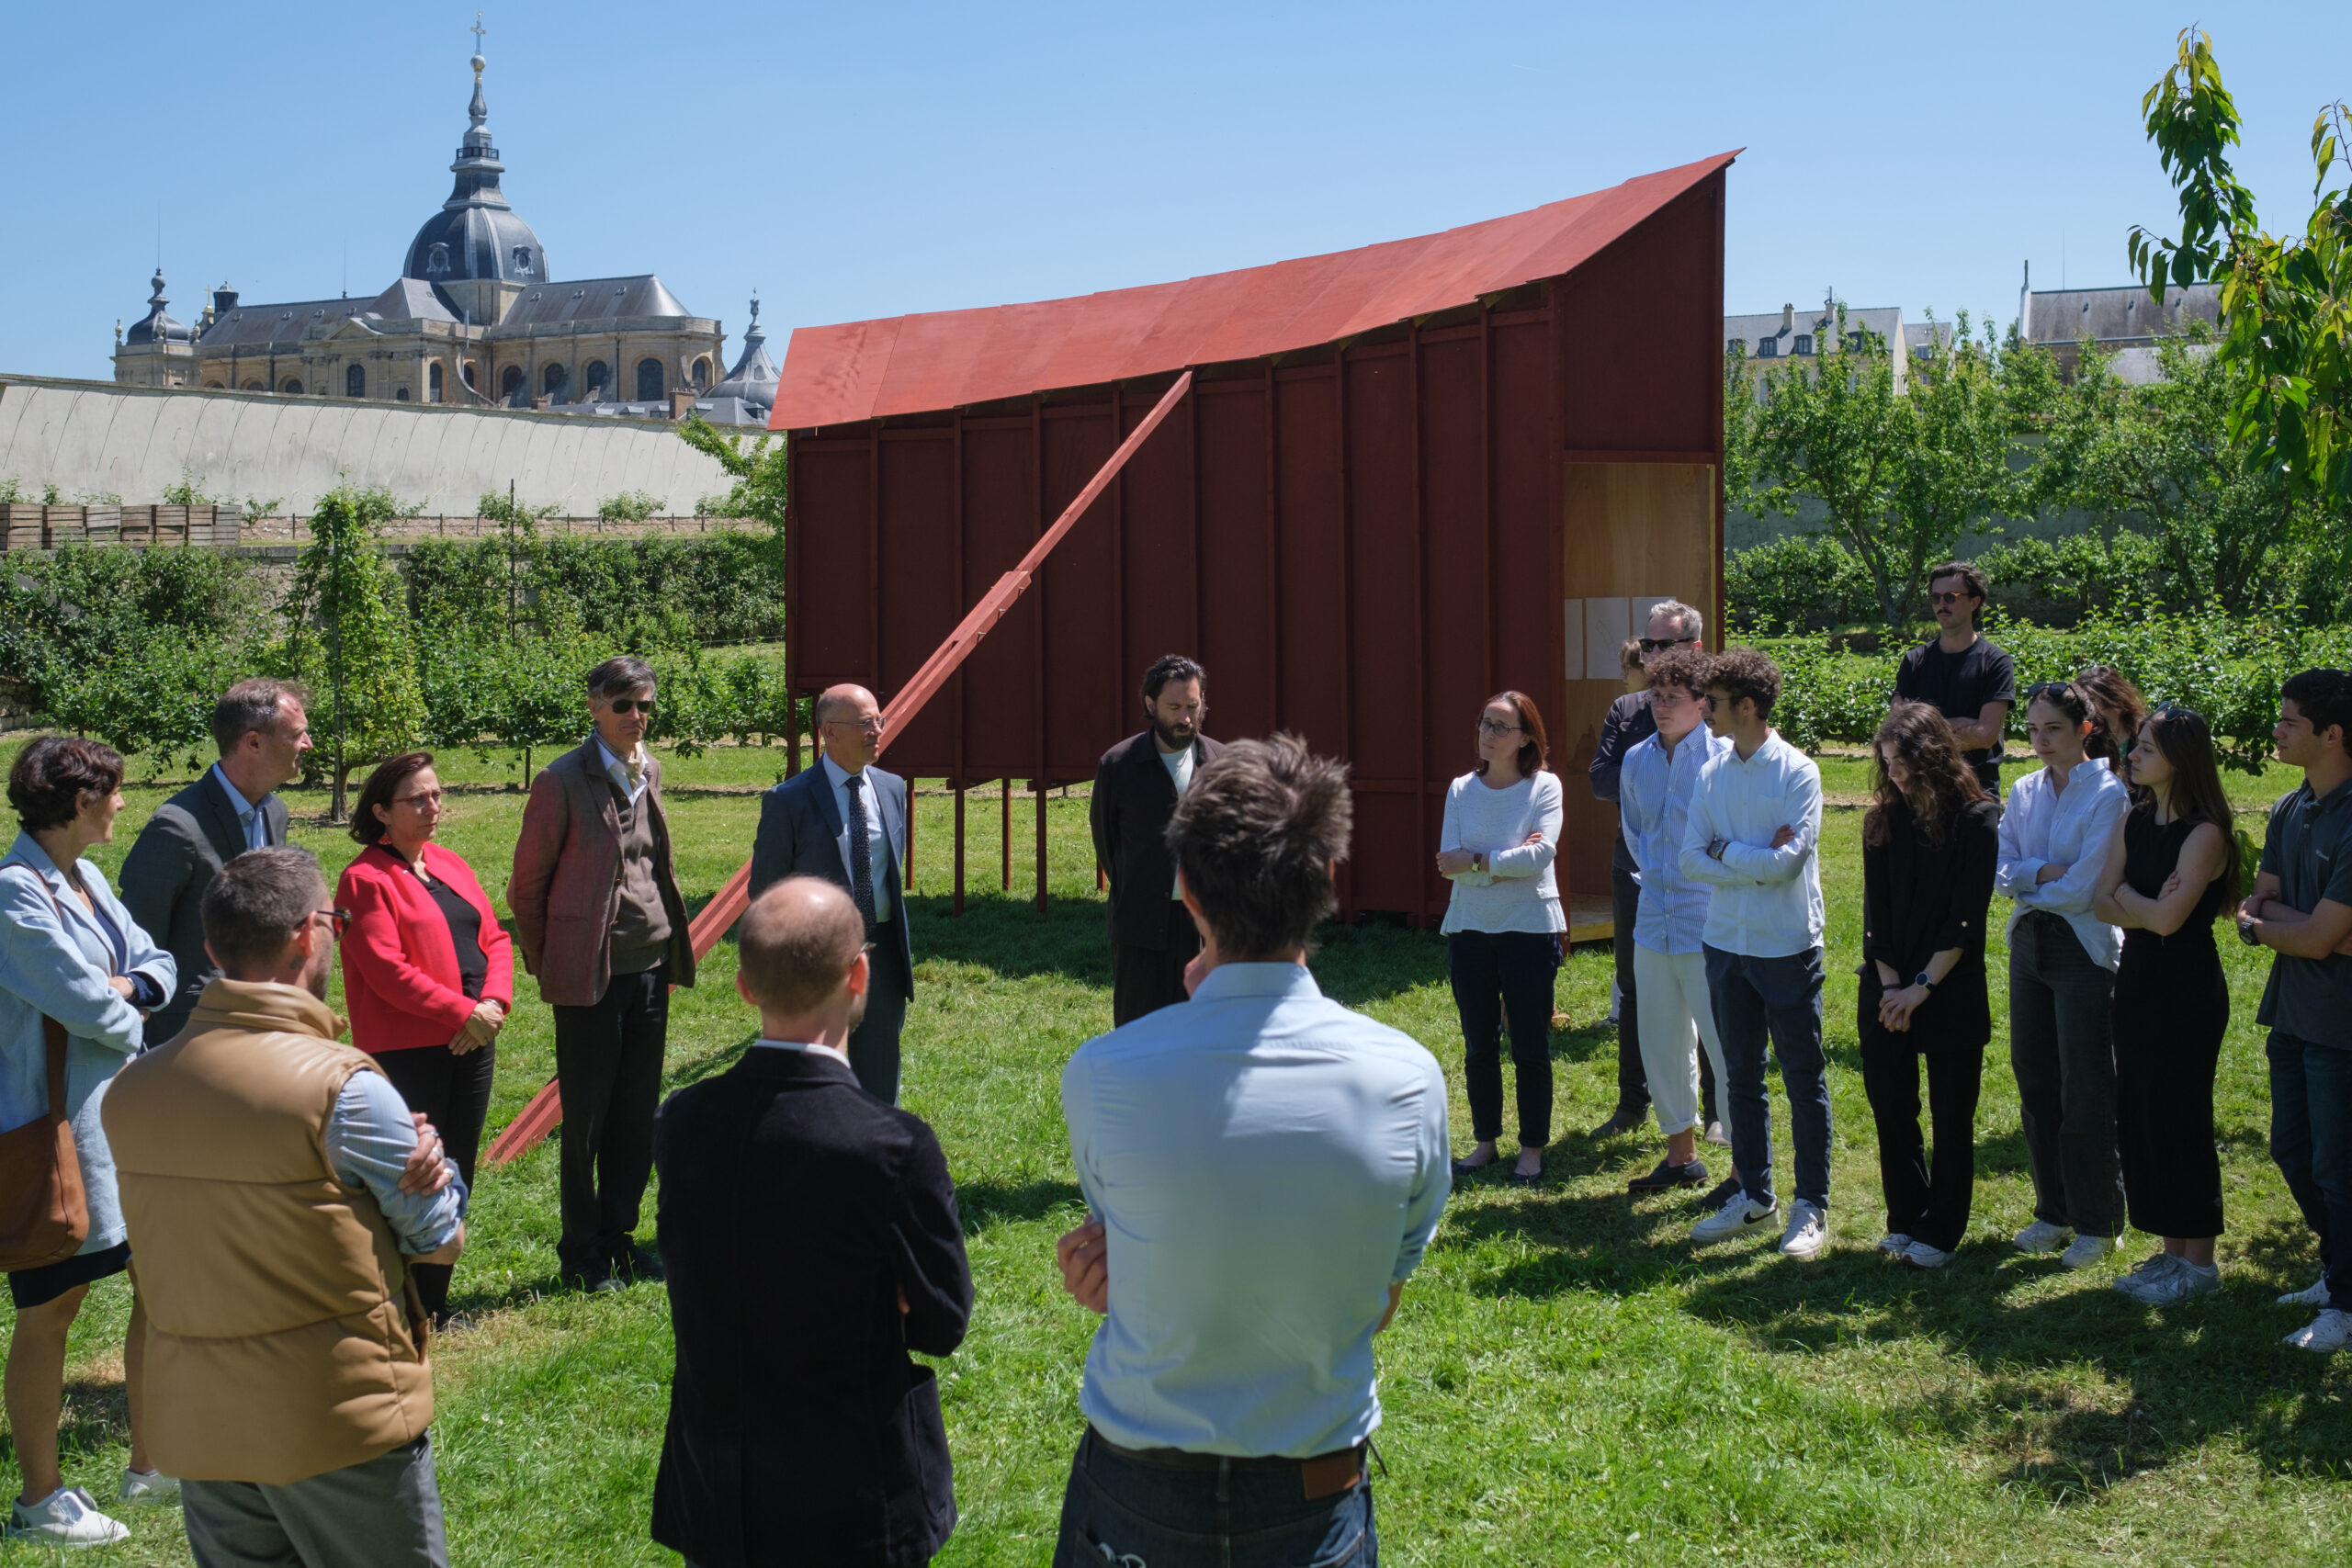 Groupe de personne discutant, structure en bois peint en rouge au second plan, châteaux de Versailles en fonds